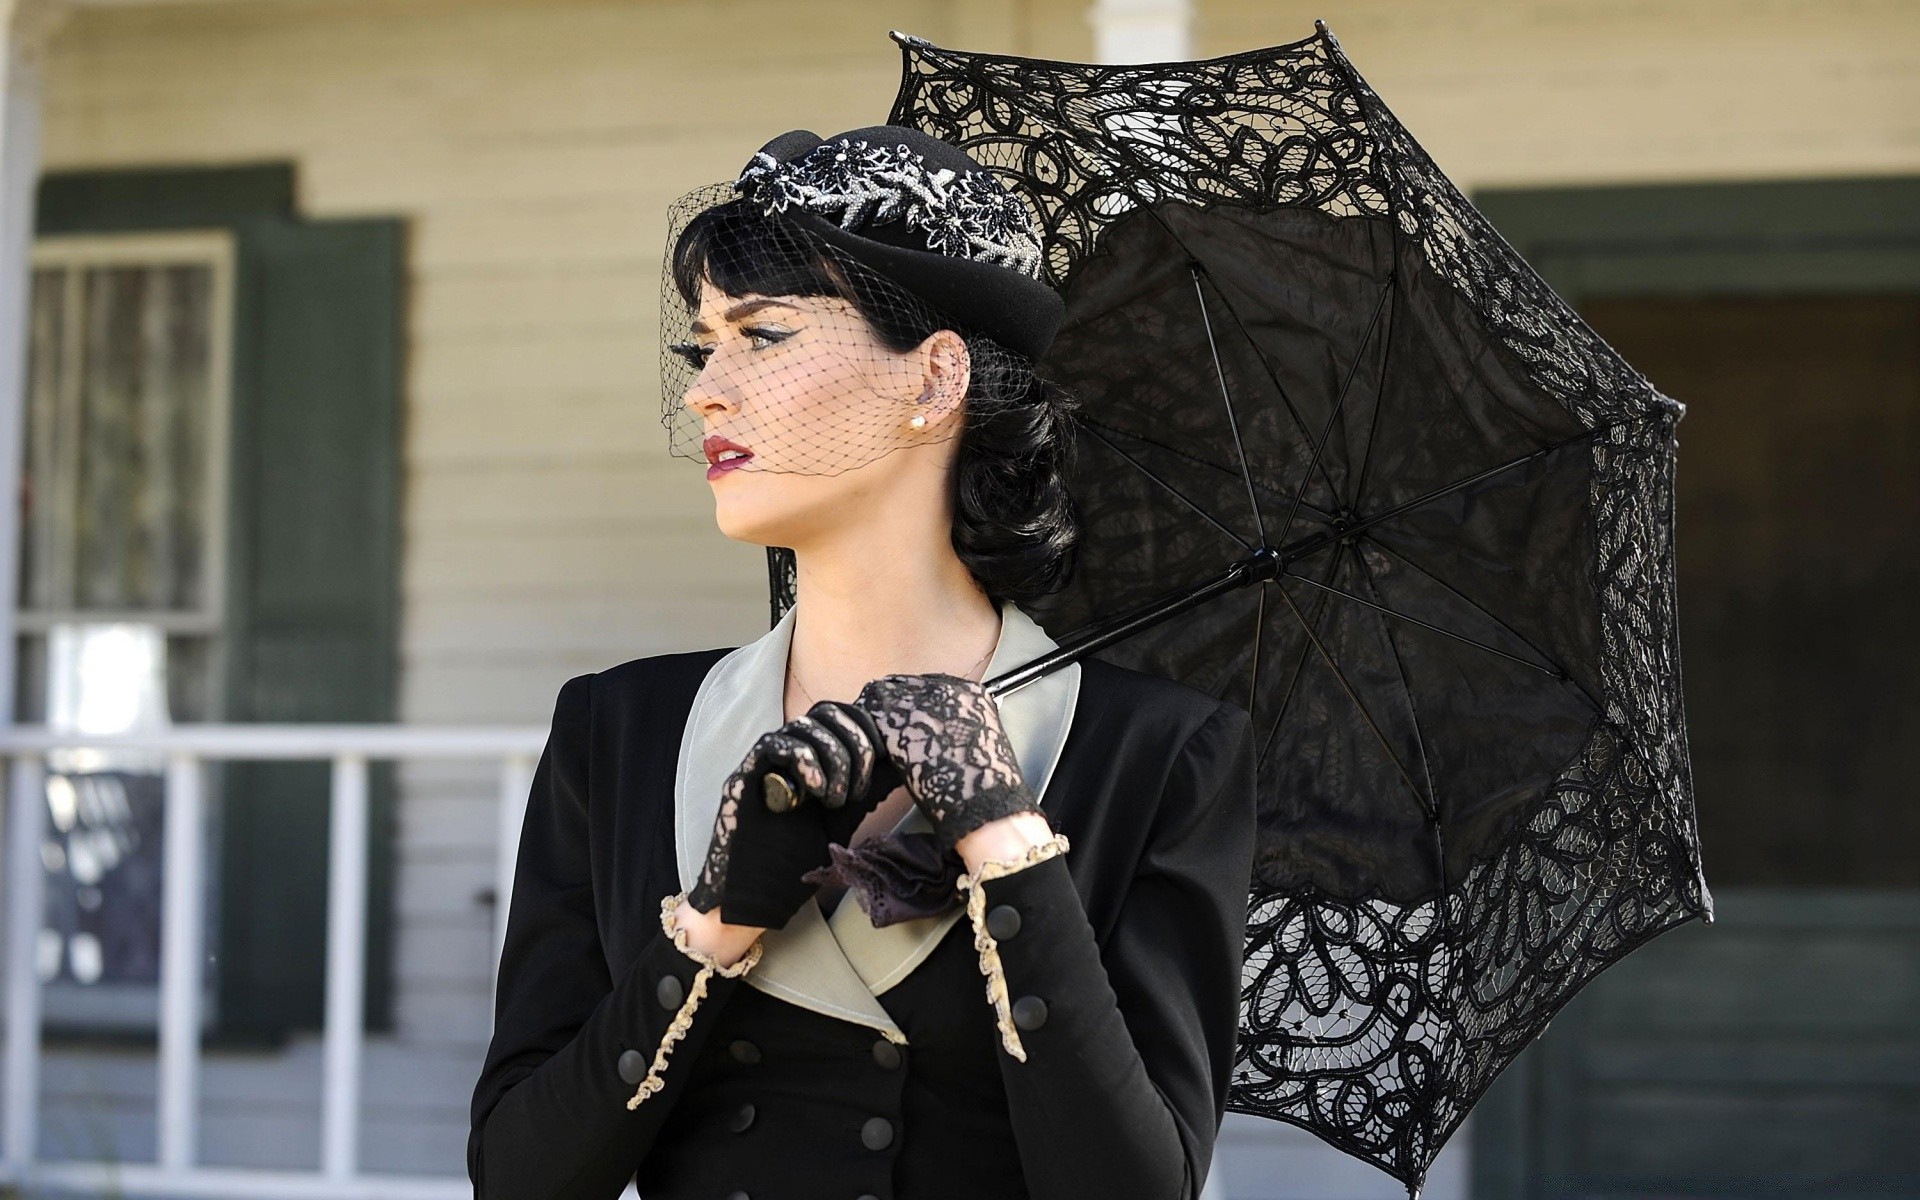 певицы женщина мода портрет взрослый носить модель один модные платье девушка гламур красивые зонтик